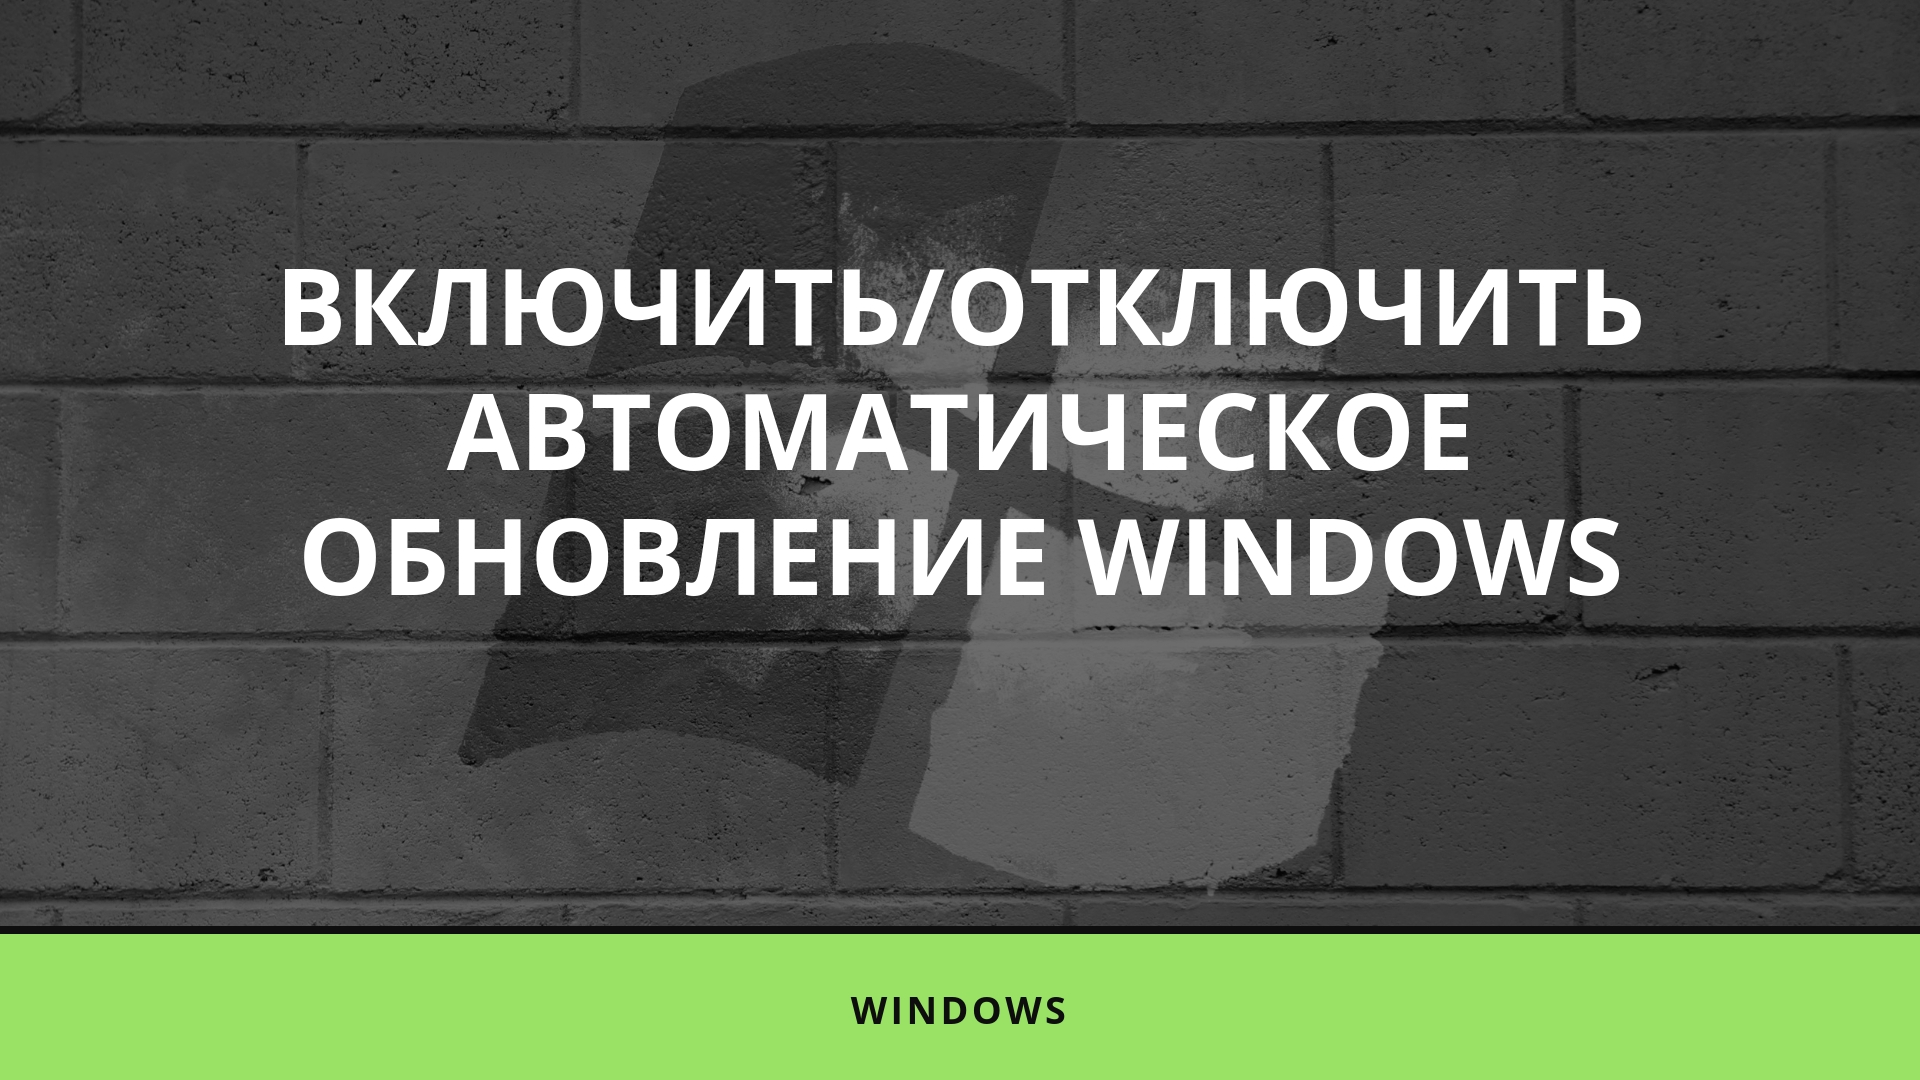 Включить/отключить автоматическое обновление Windows